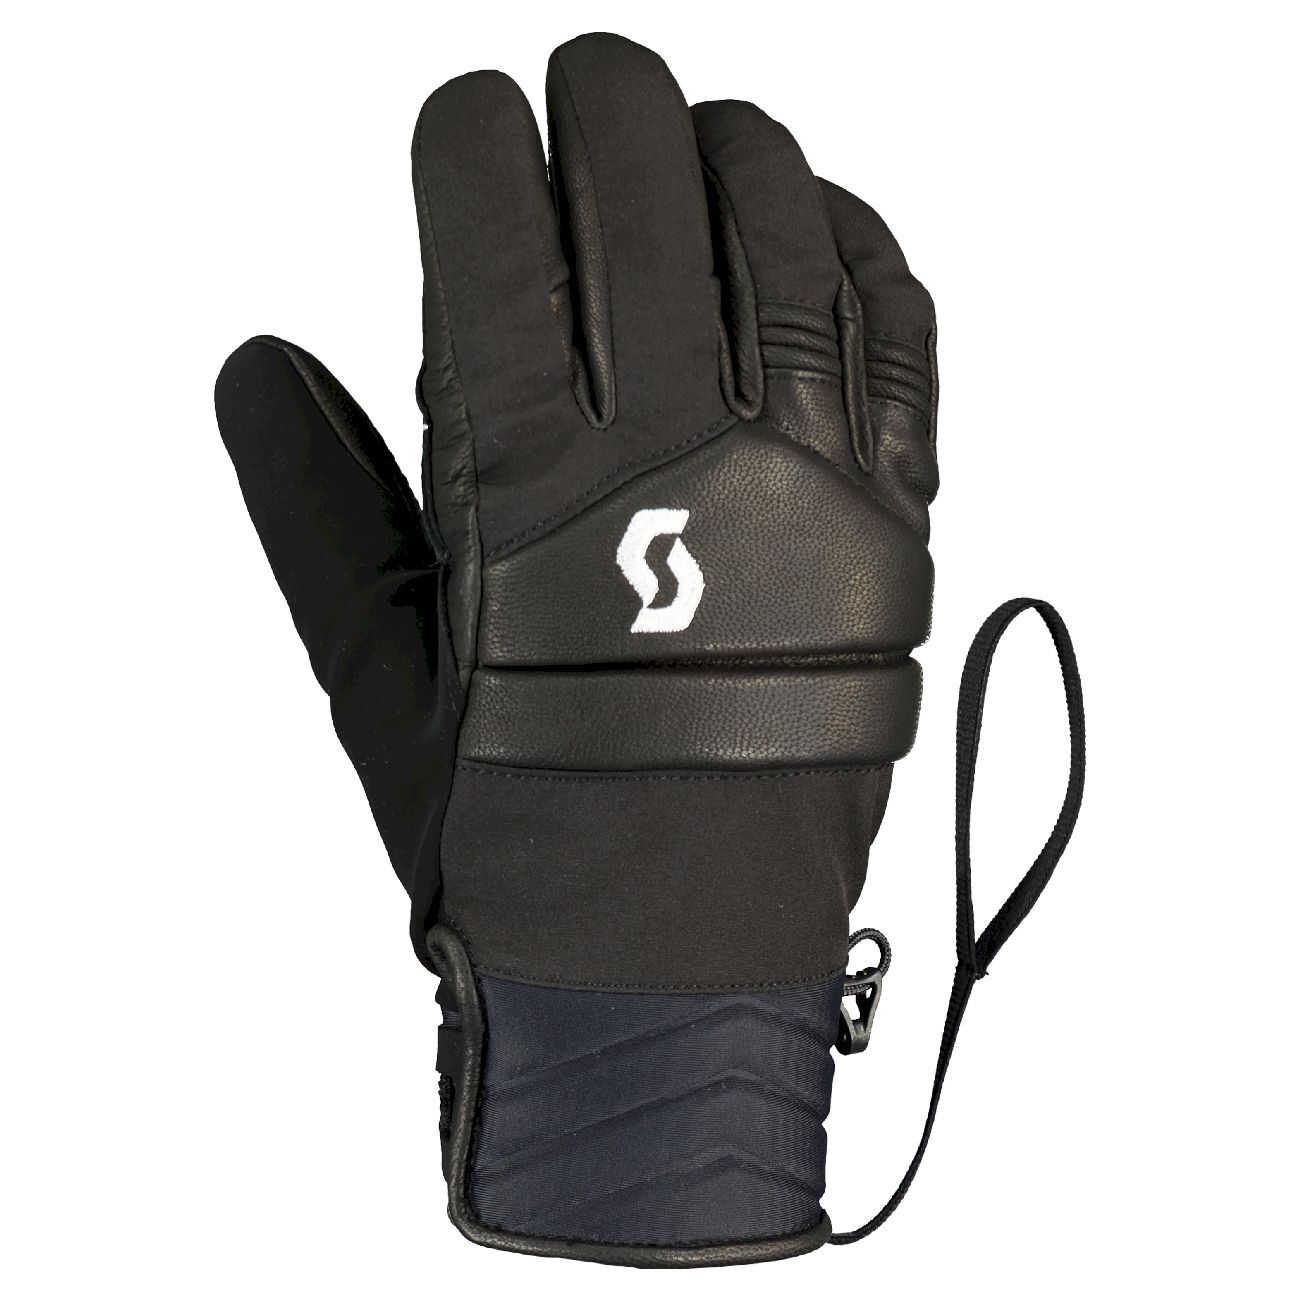 Scott Ultimate Plus - Ski gloves - Women's